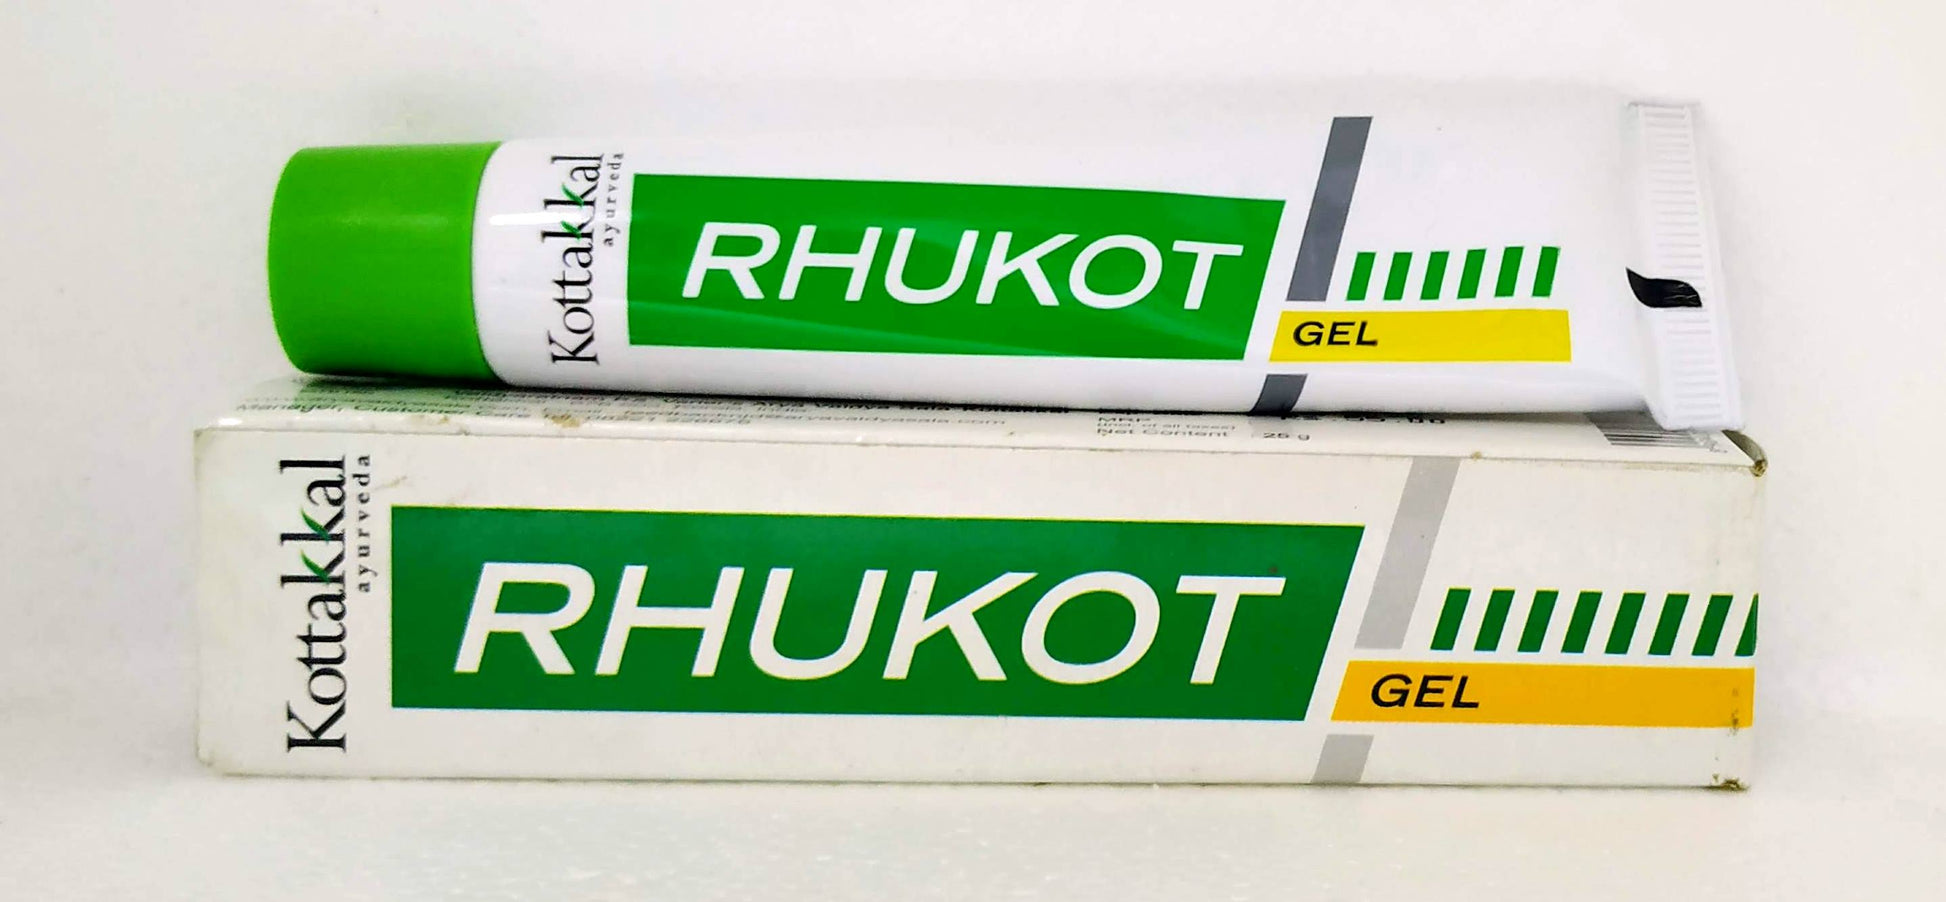 Shop Rhukot Gel 25gm at price 65.00 from Kottakkal Online - Ayush Care